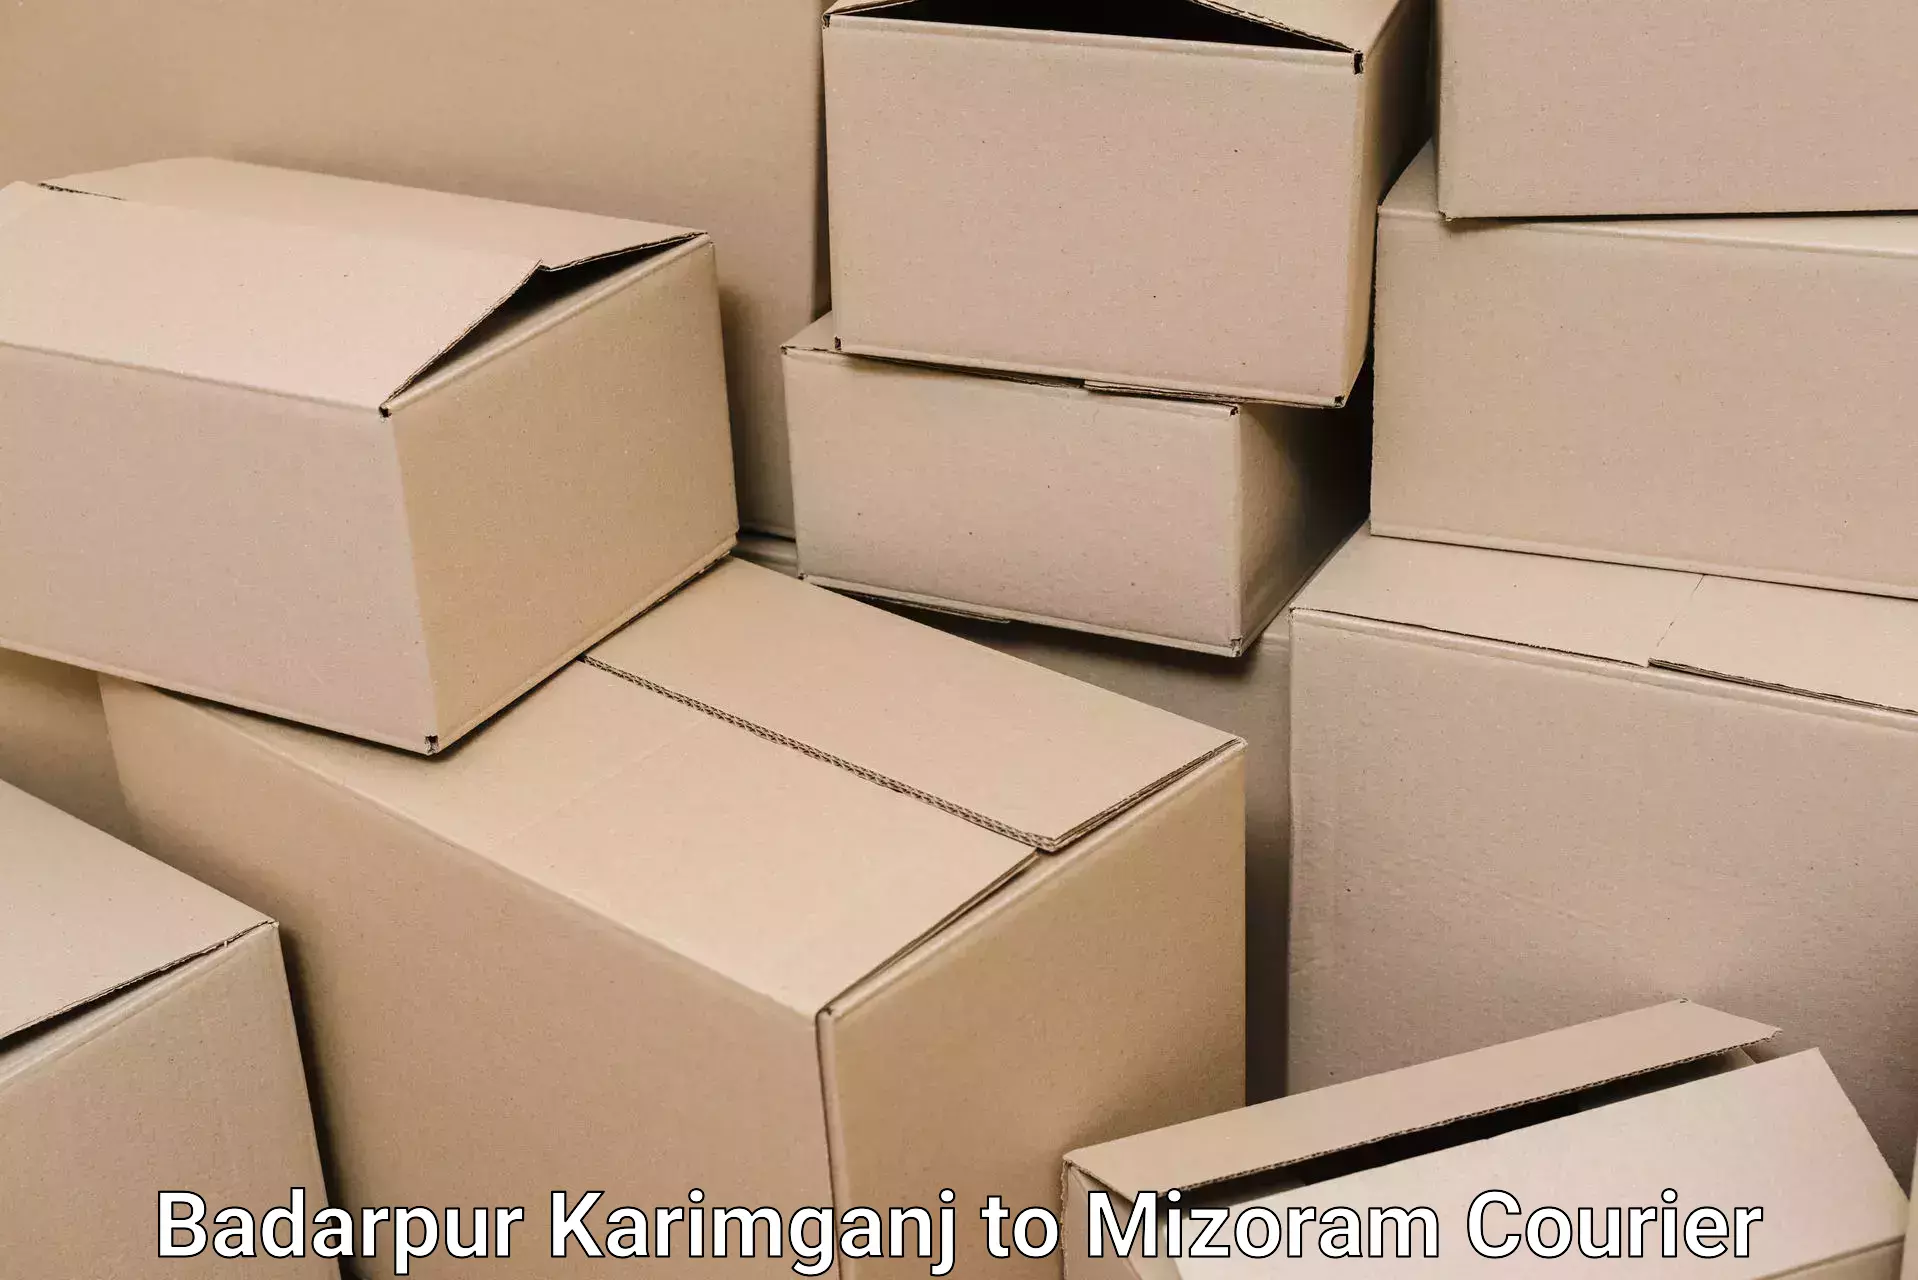 Furniture moving experts Badarpur Karimganj to Khawzawl